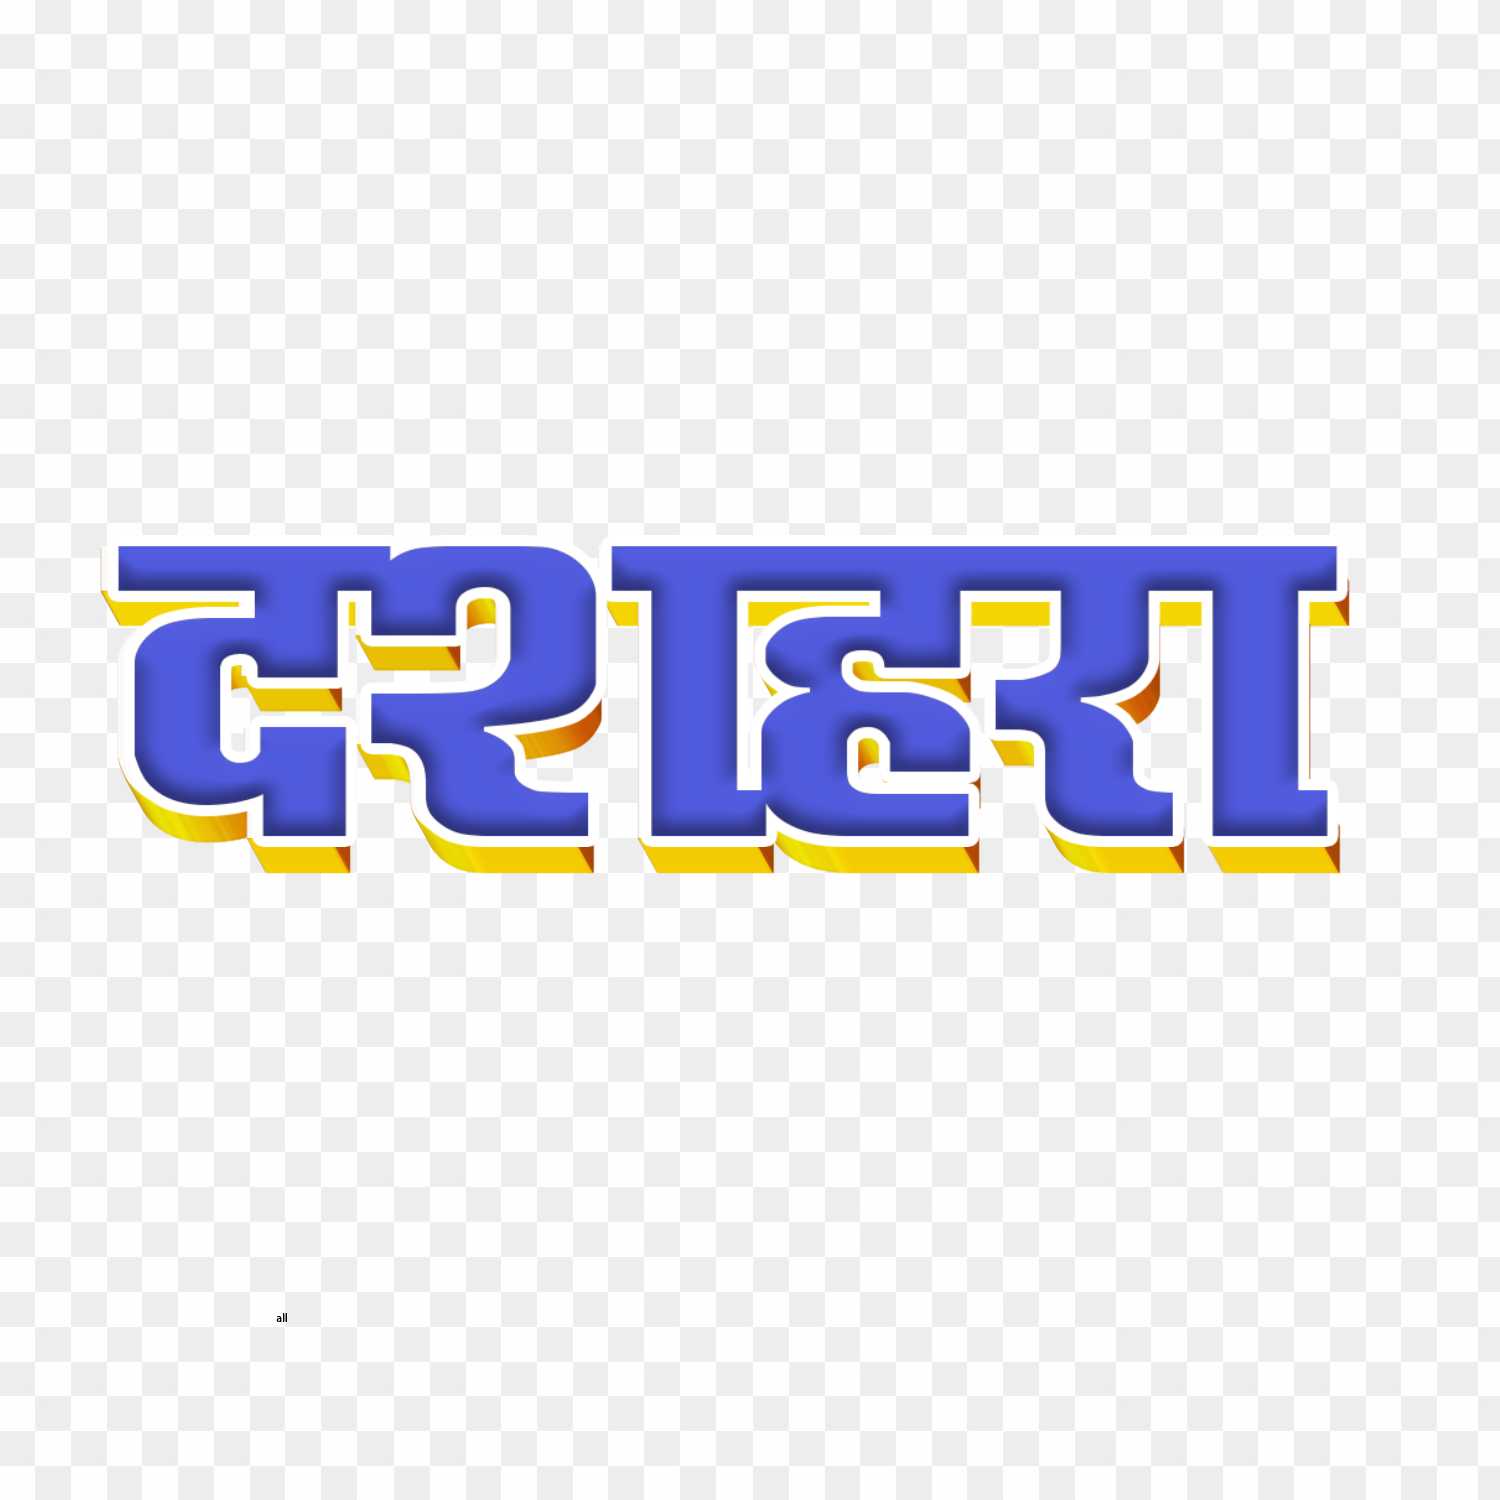 Dashara in hindi text PNG images 